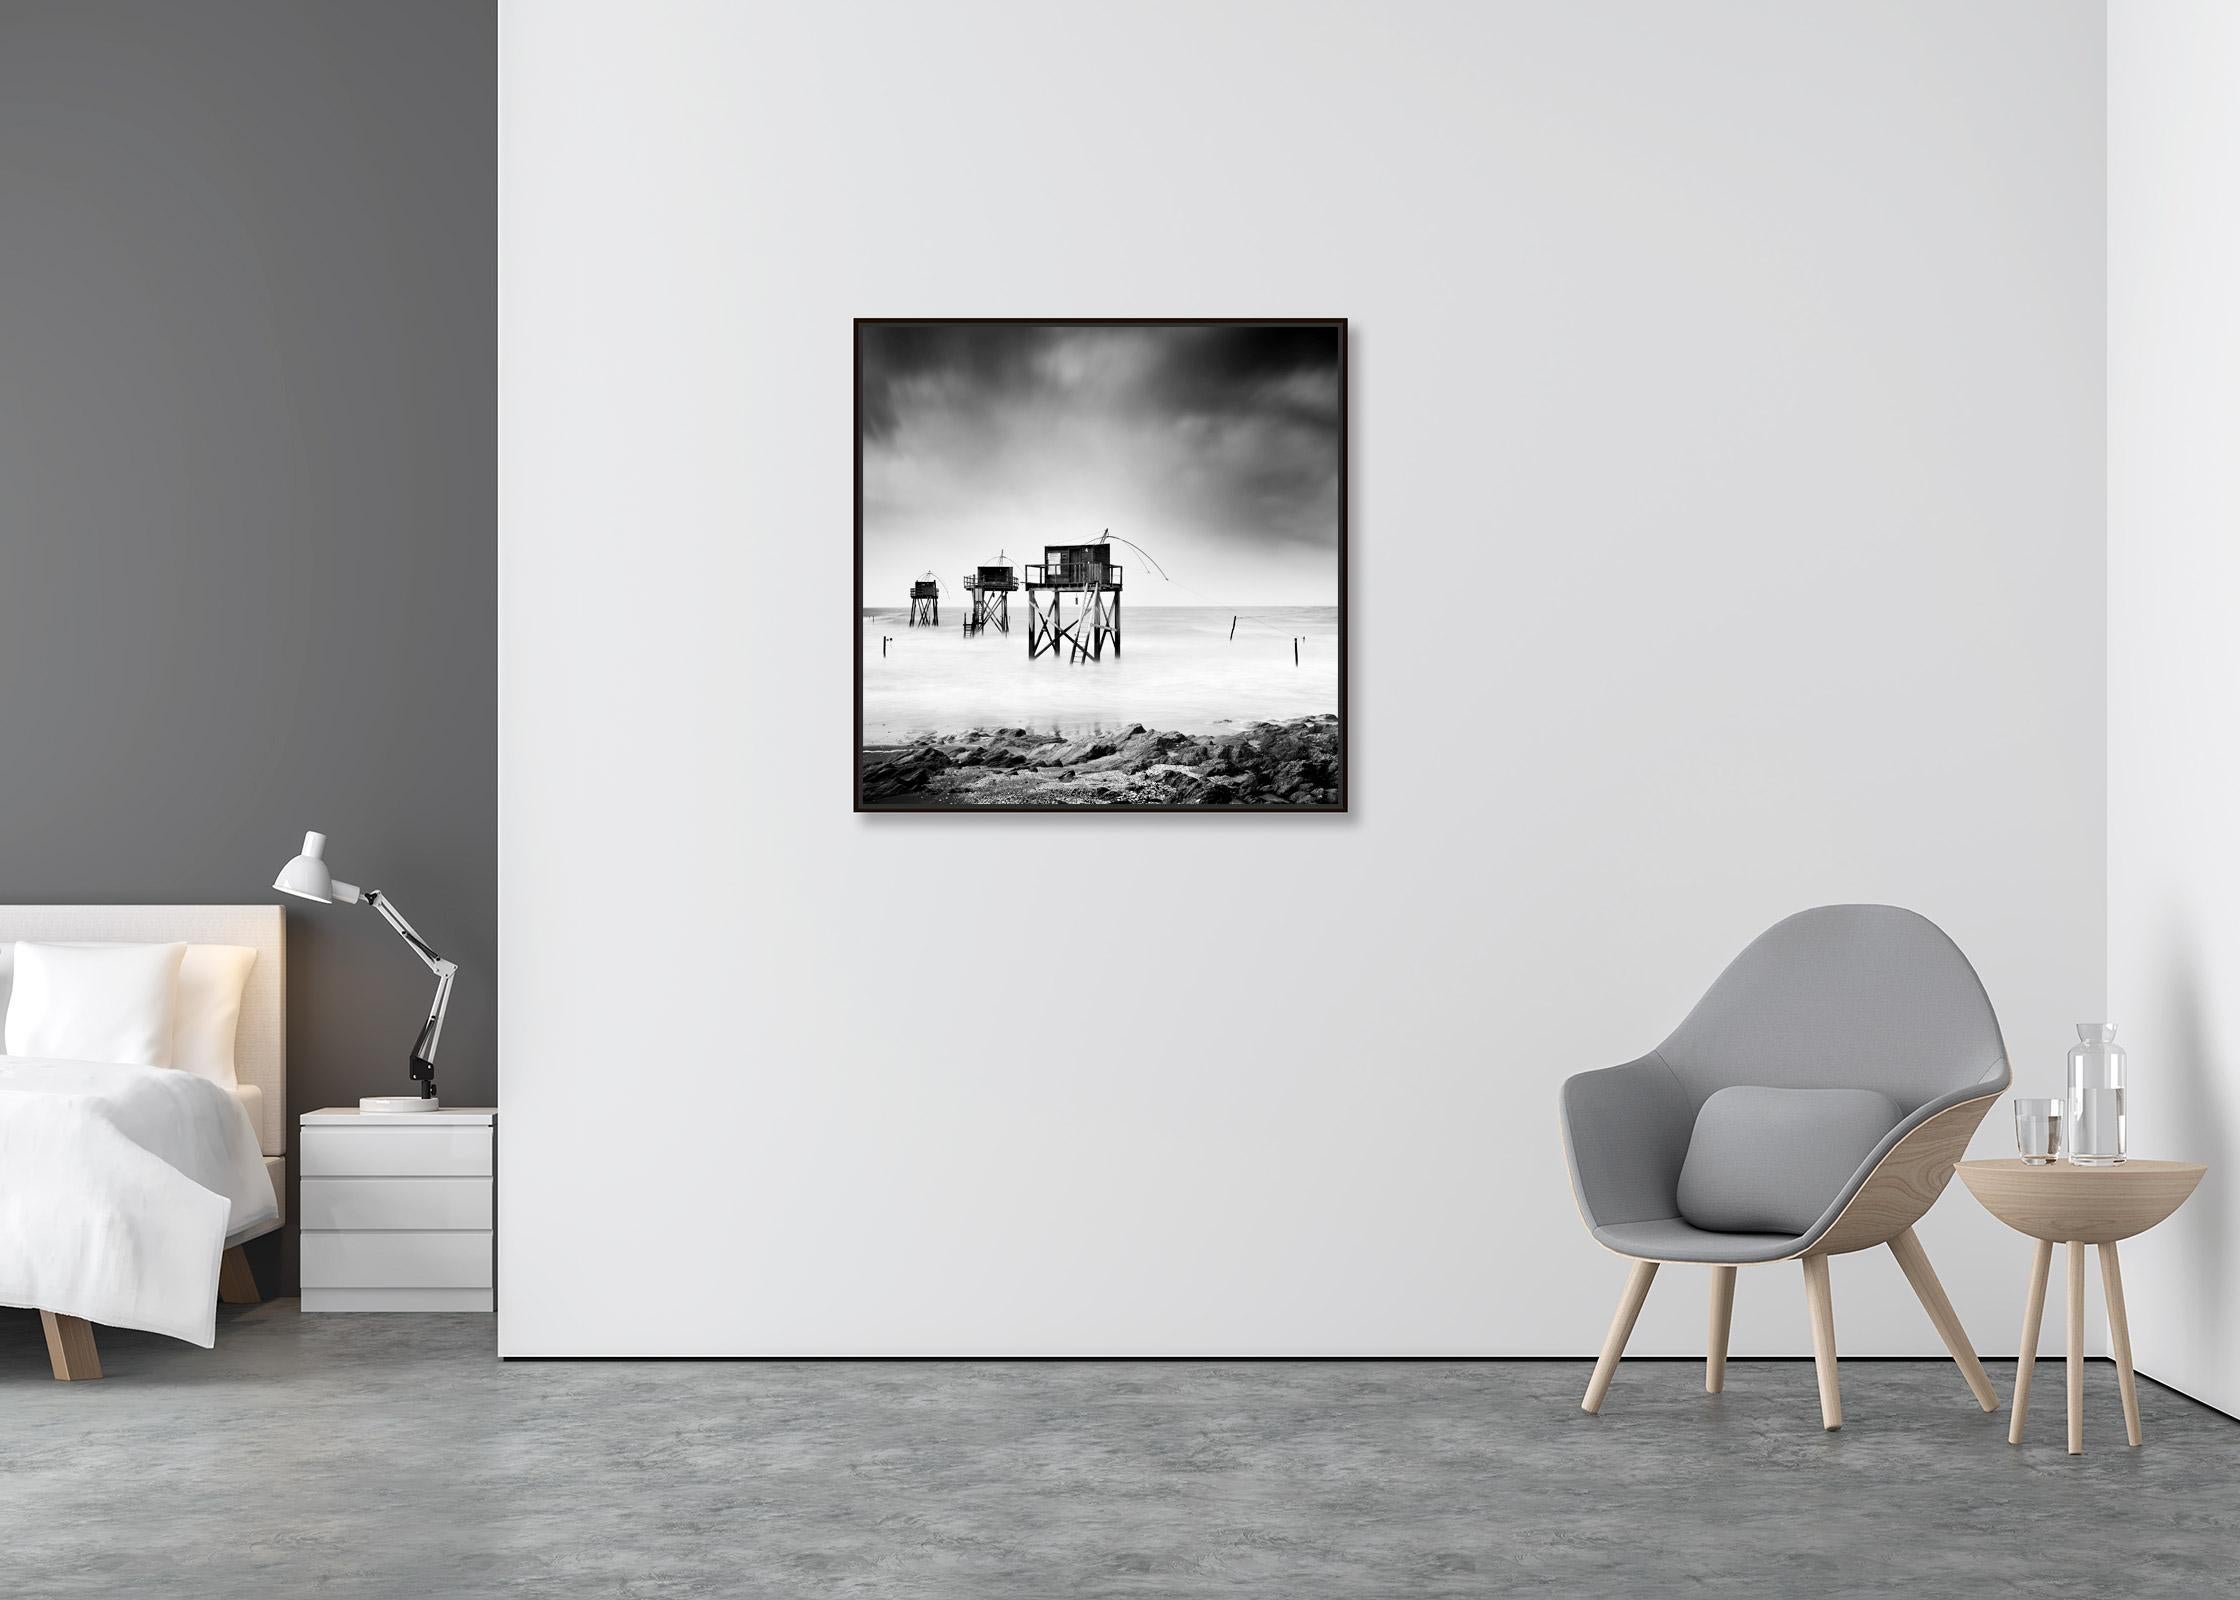 Fishing Hut auf Stilts, Carrelets, Schwarz-Weiß-Fotografie mit feiner Landschaftsfotografie  (Zeitgenössisch), Photograph, von Gerald Berghammer